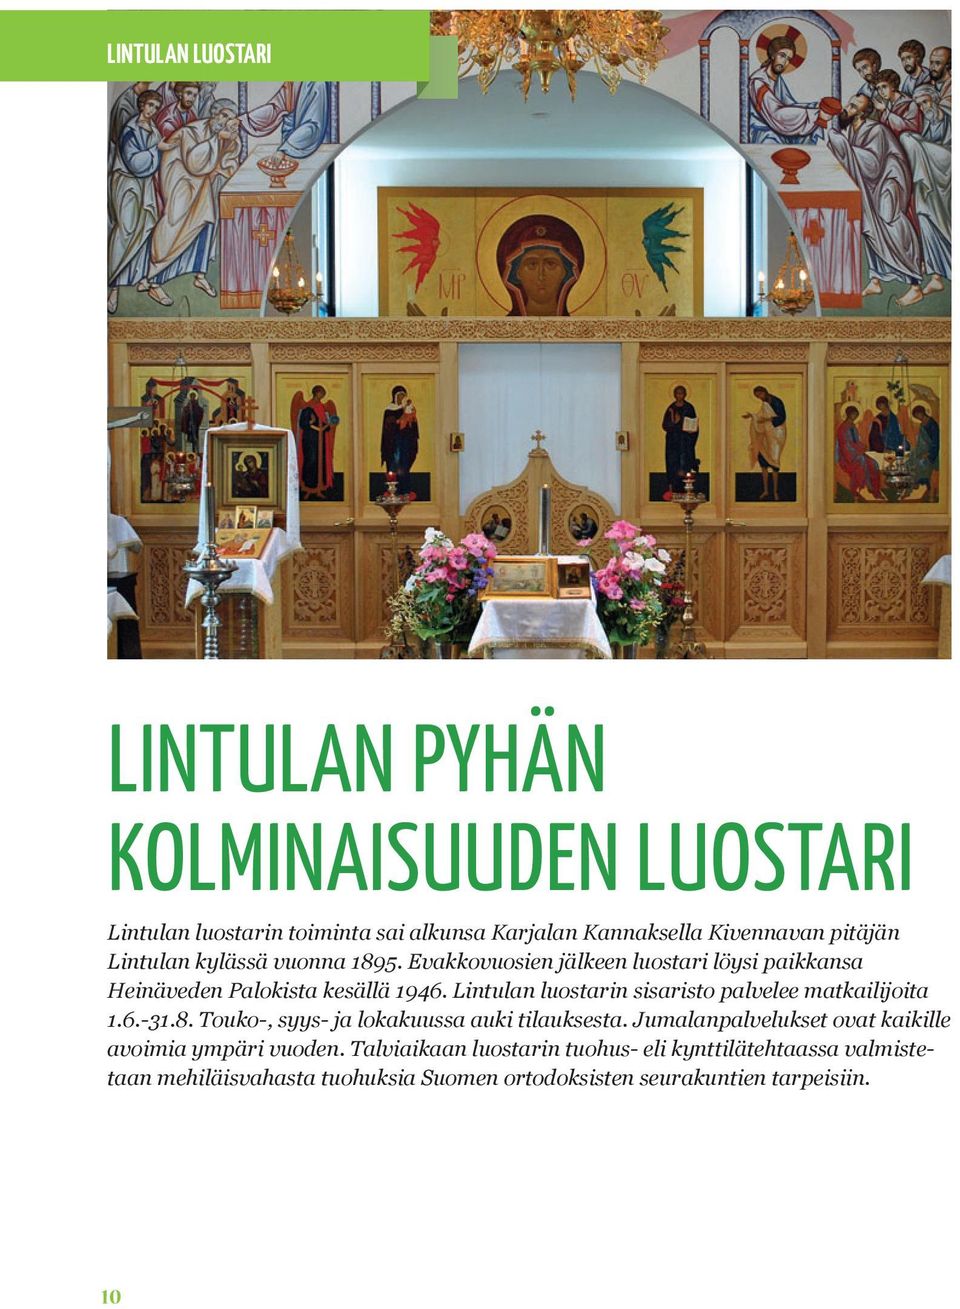 Lintulan luostarin sisaristo palvelee matkailijoita 1.6.-31.8. Touko-, syys- ja lokakuussa auki tilauksesta.